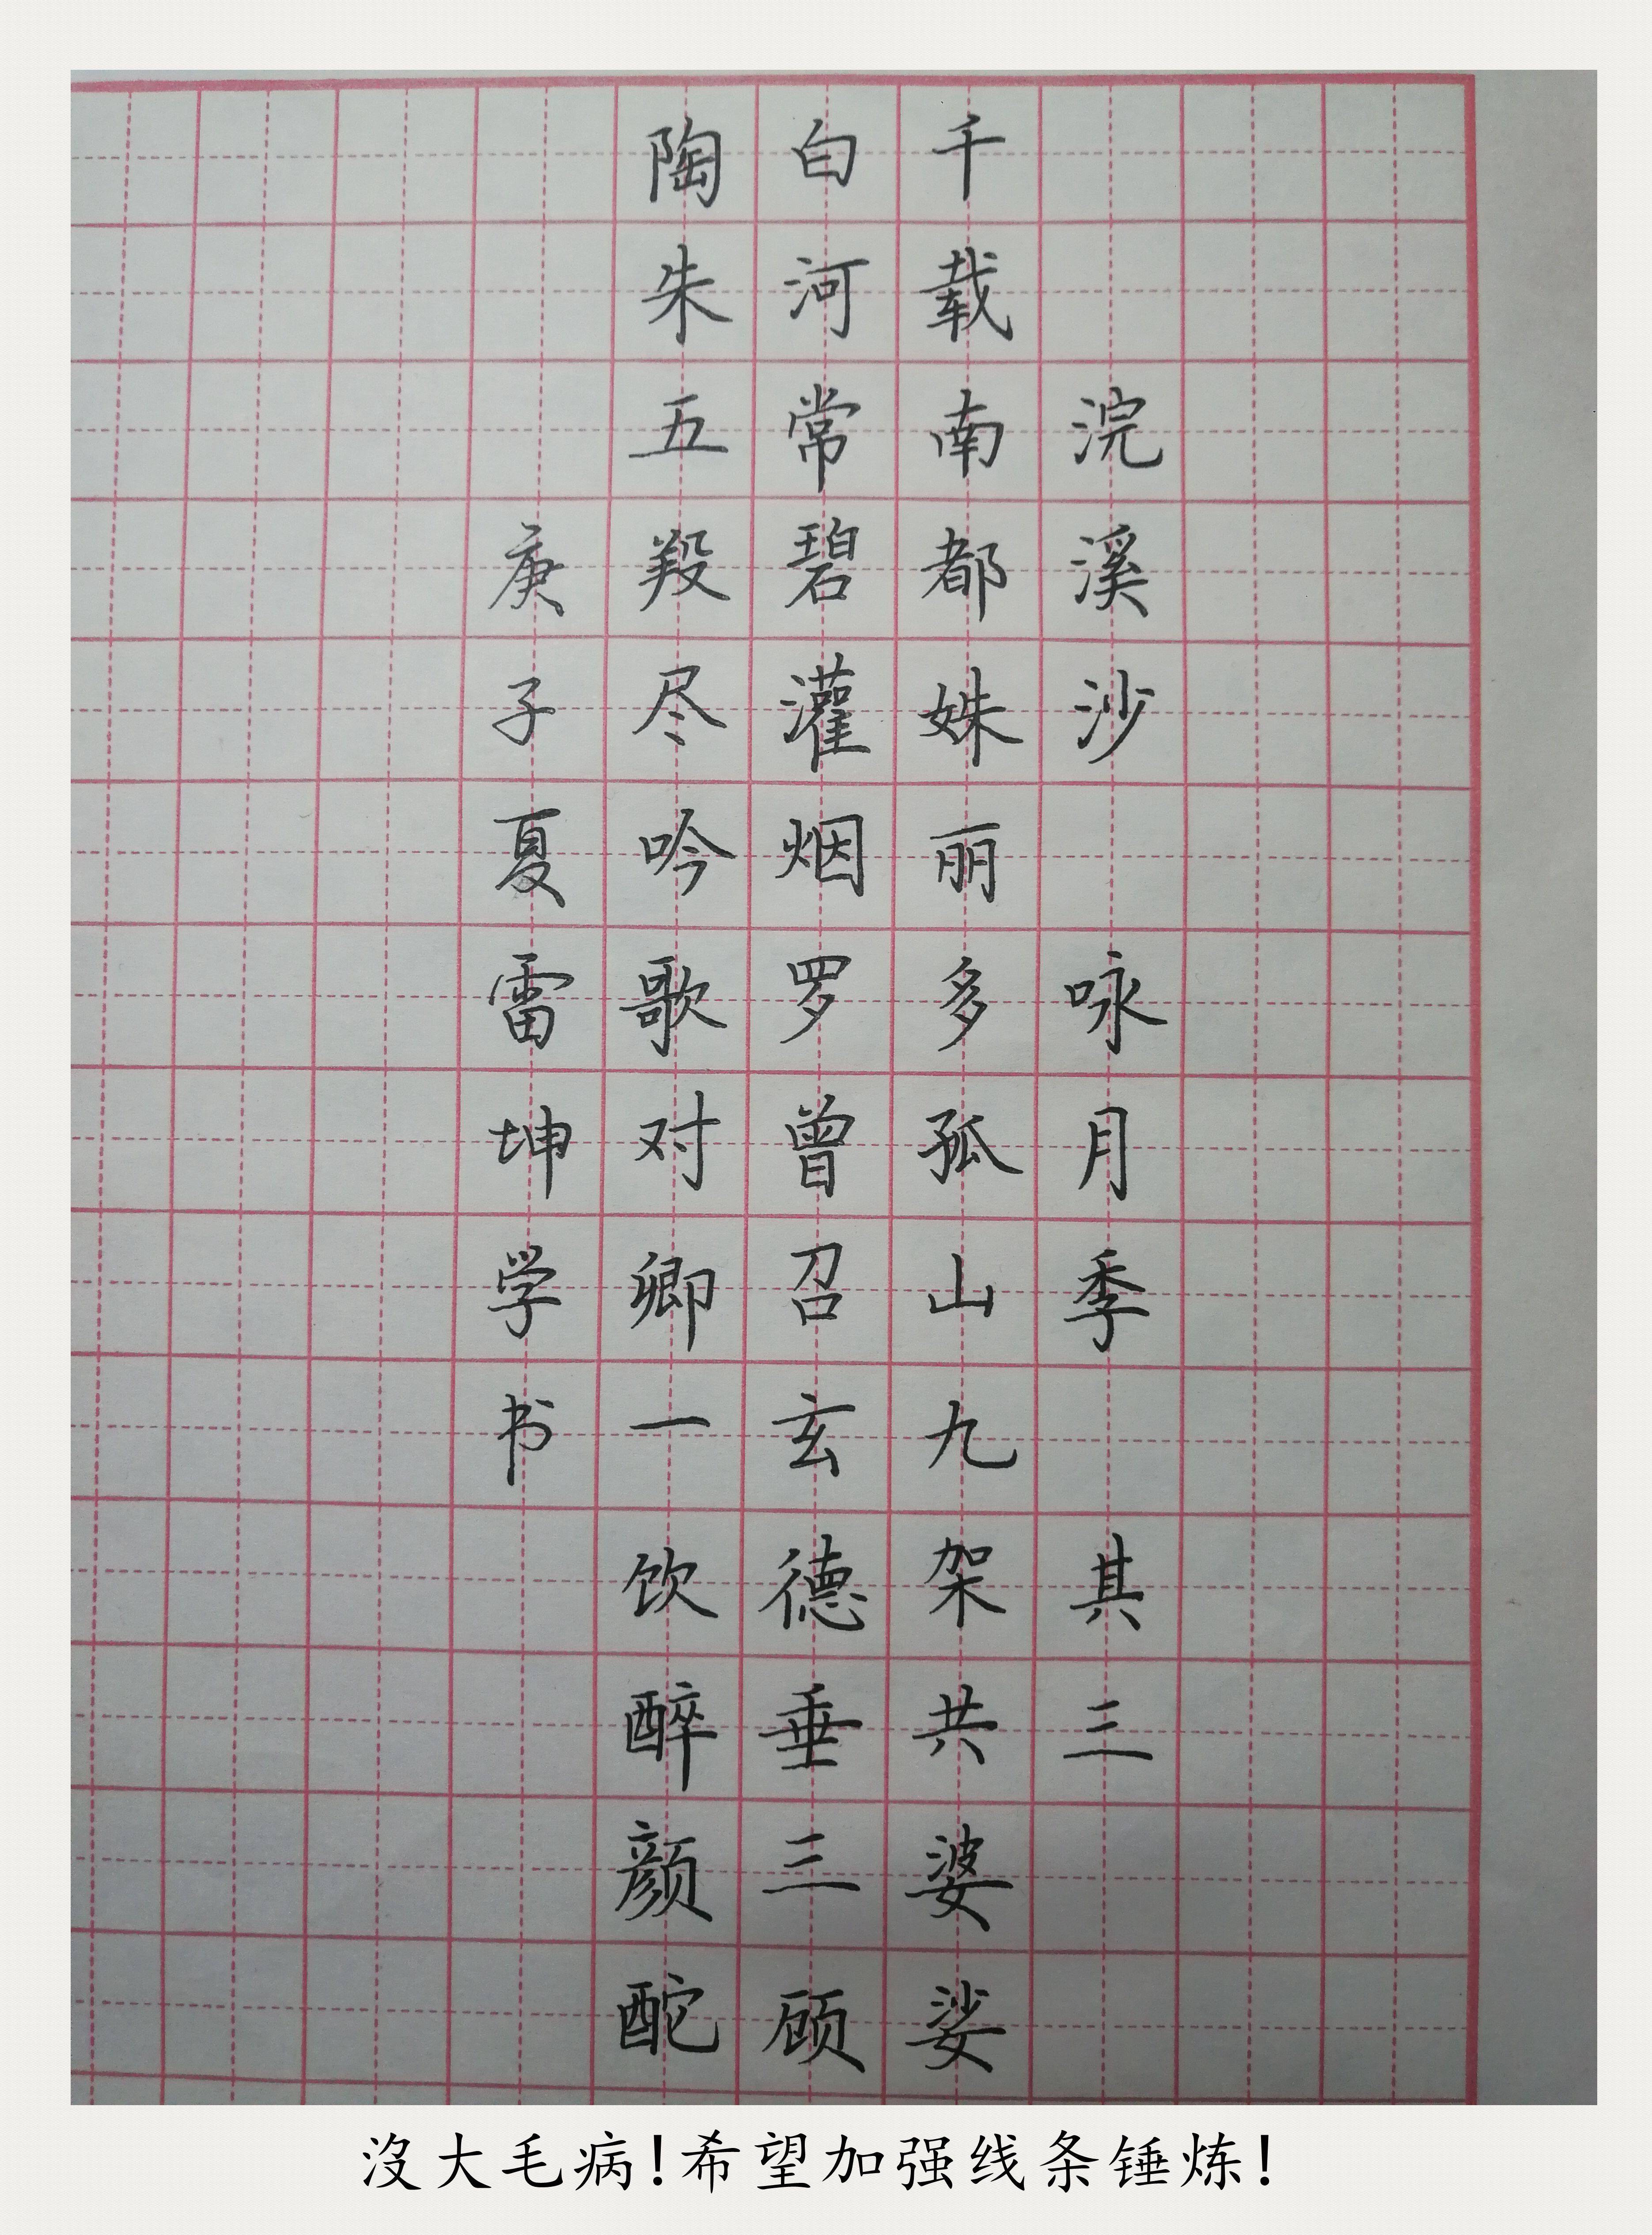 内乡县硬笔书法家协会以"弘扬硬笔书法文化,提高全社会汉字规范书写和